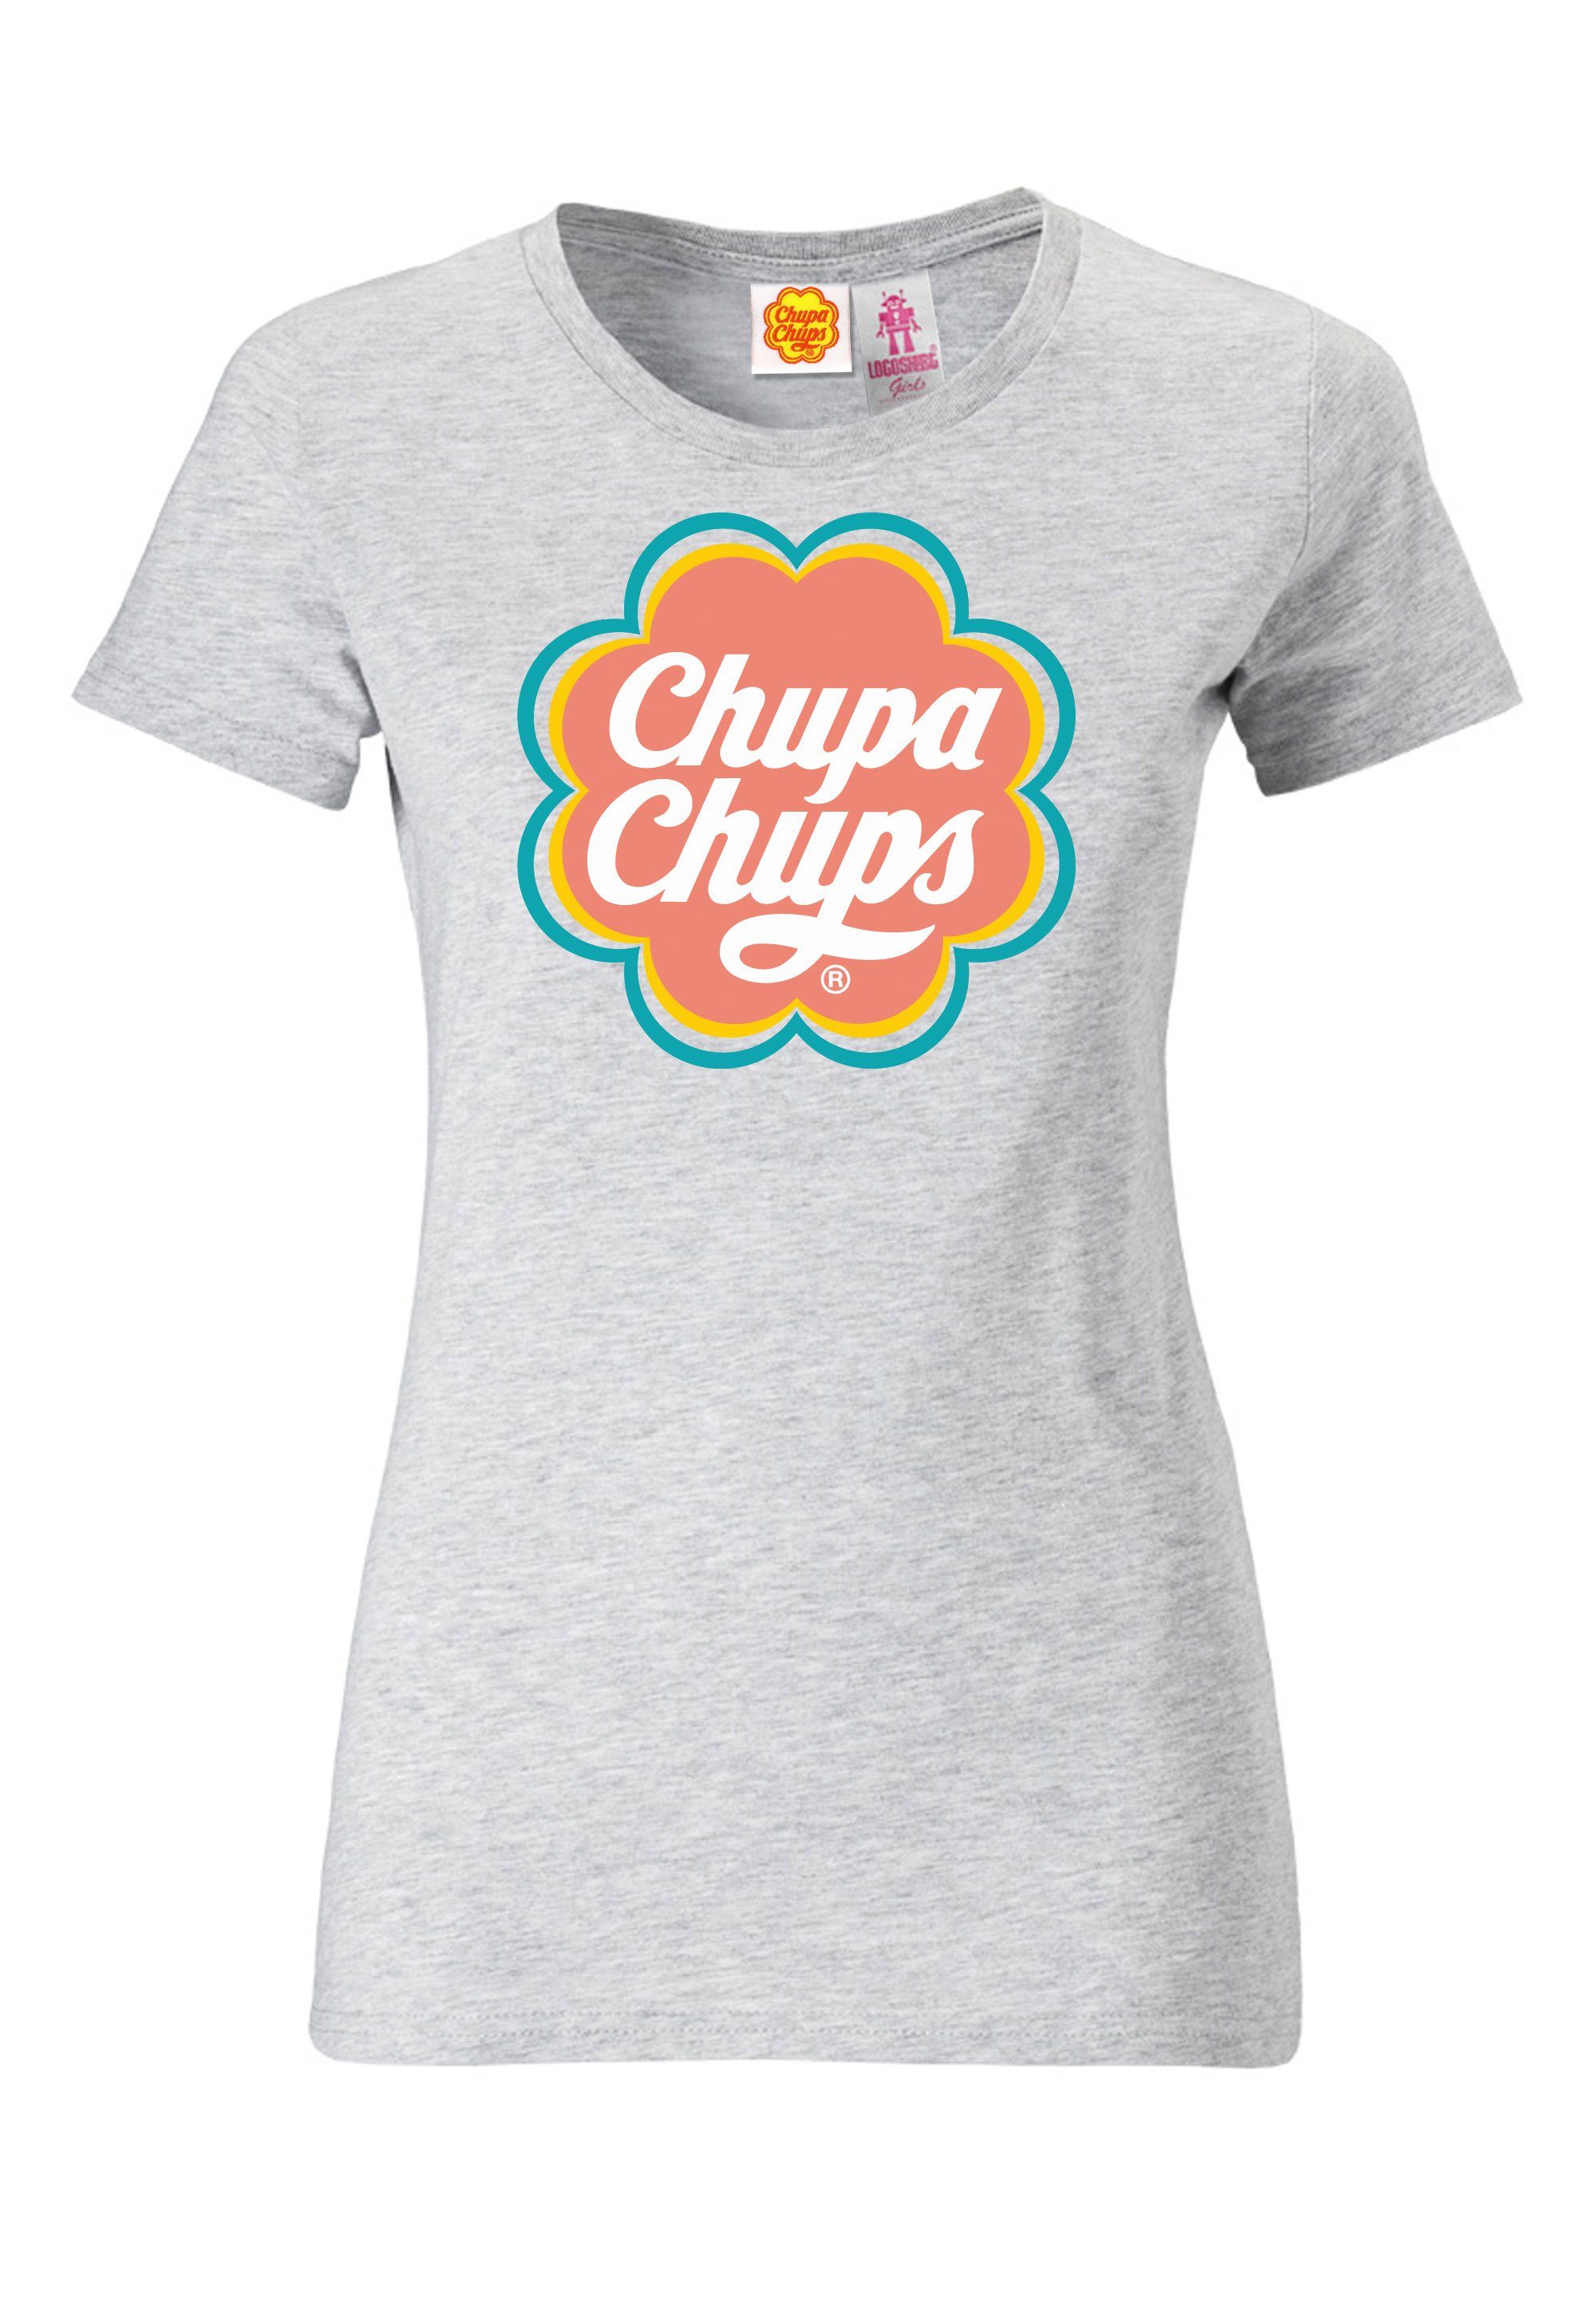 lizenzierten Design Chups mit LOGOSHIRT Chupa T-Shirt